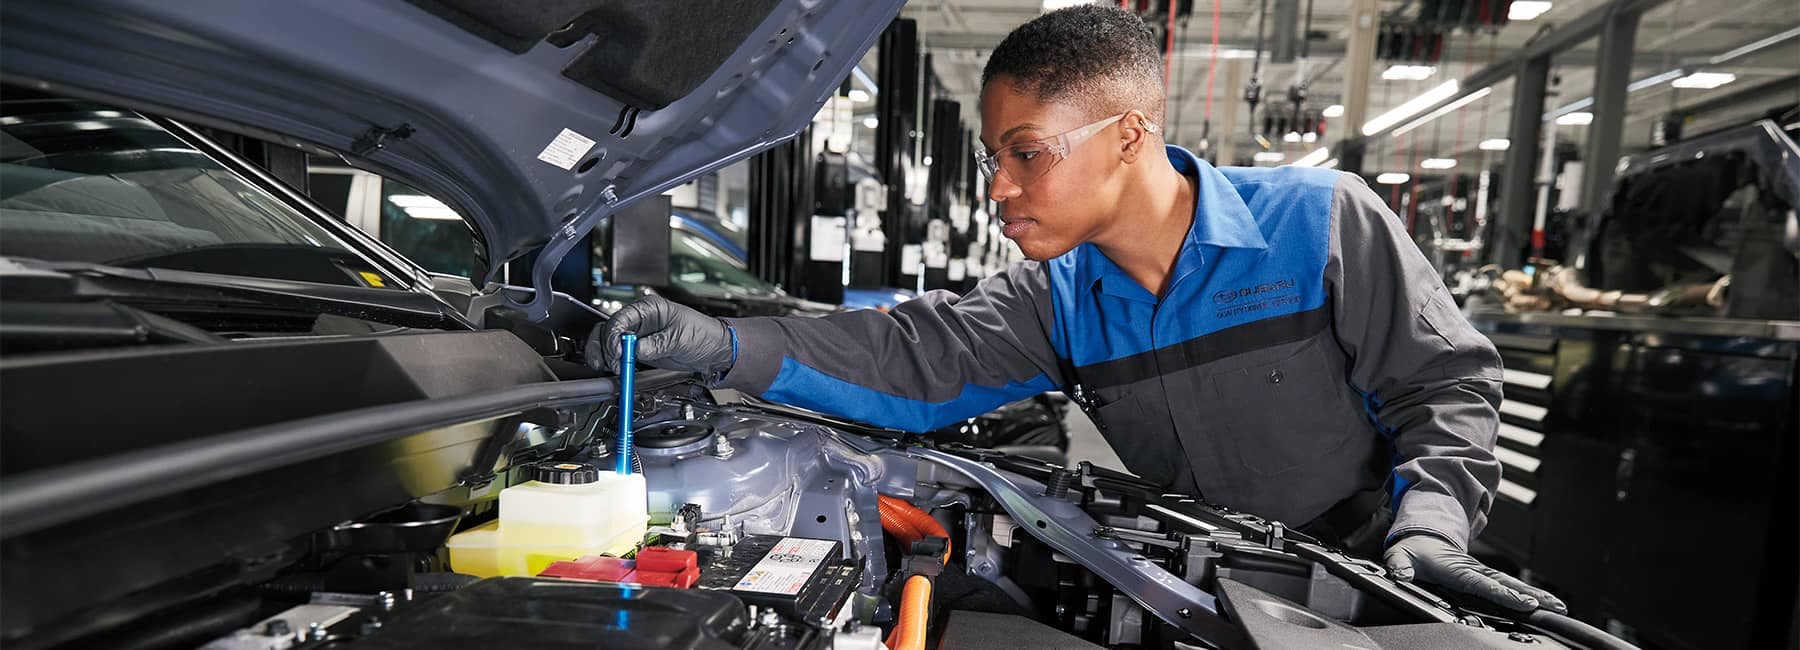 Subaru Service Technician inspecting an engine